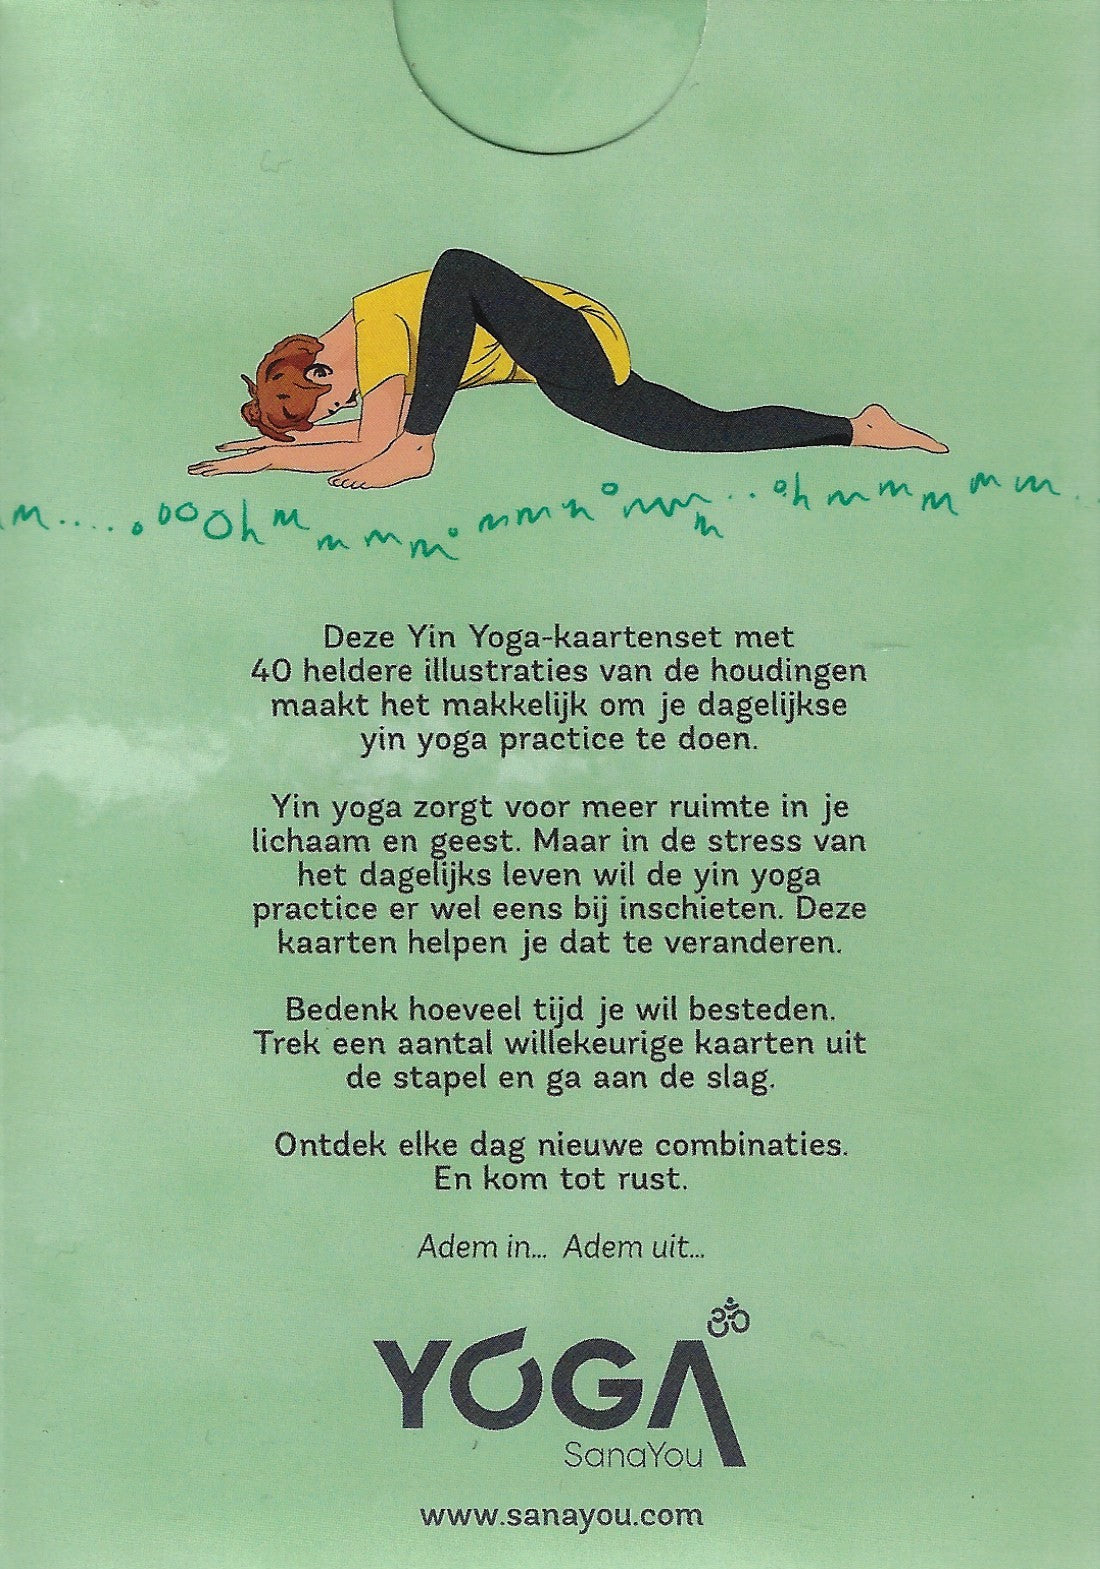 Yin Yoga kaartenset